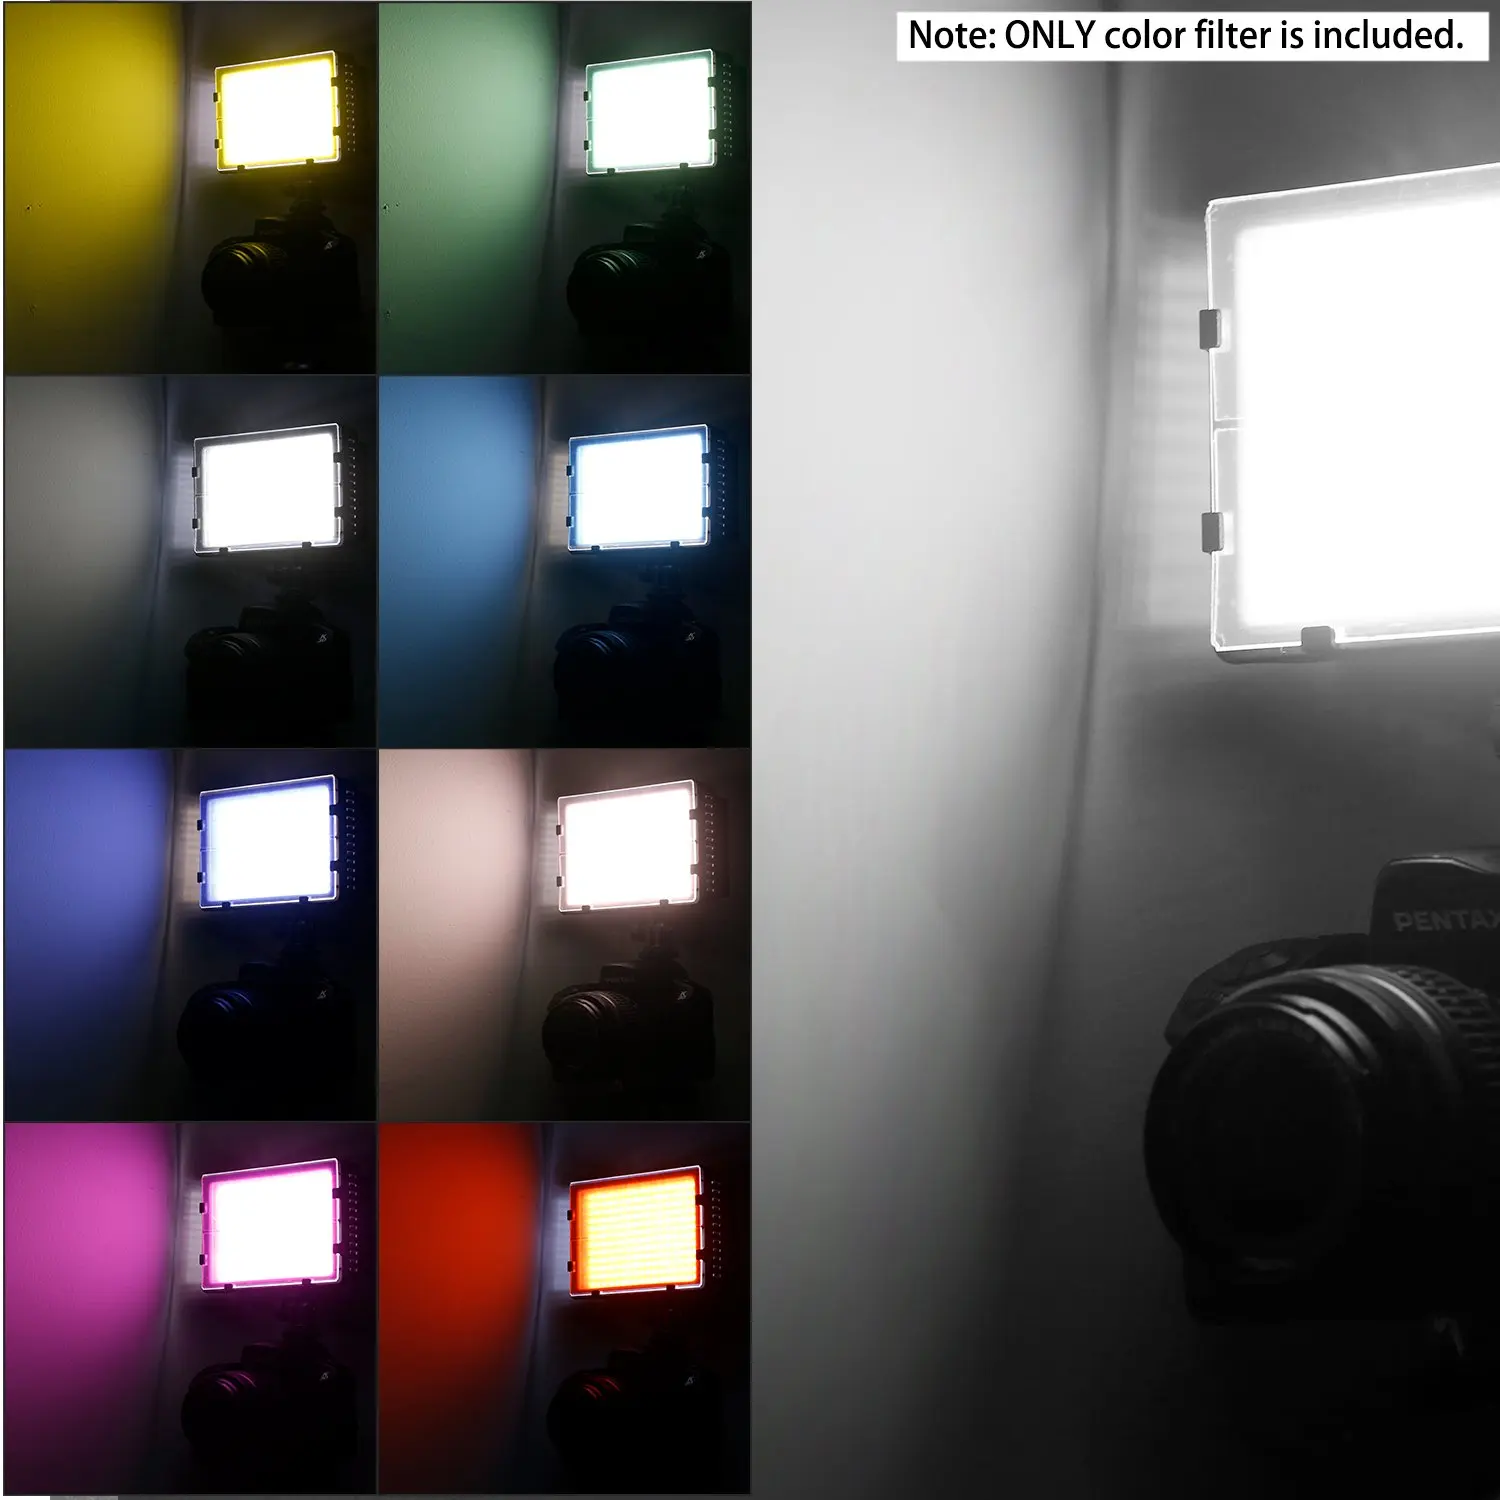 Neewer 8-Pack светильник ing цветной фильтр Tansparent фильтр для коррекции цвета в 8 для Neewer CN160 CN126 CN216 светодиодный видео светильник